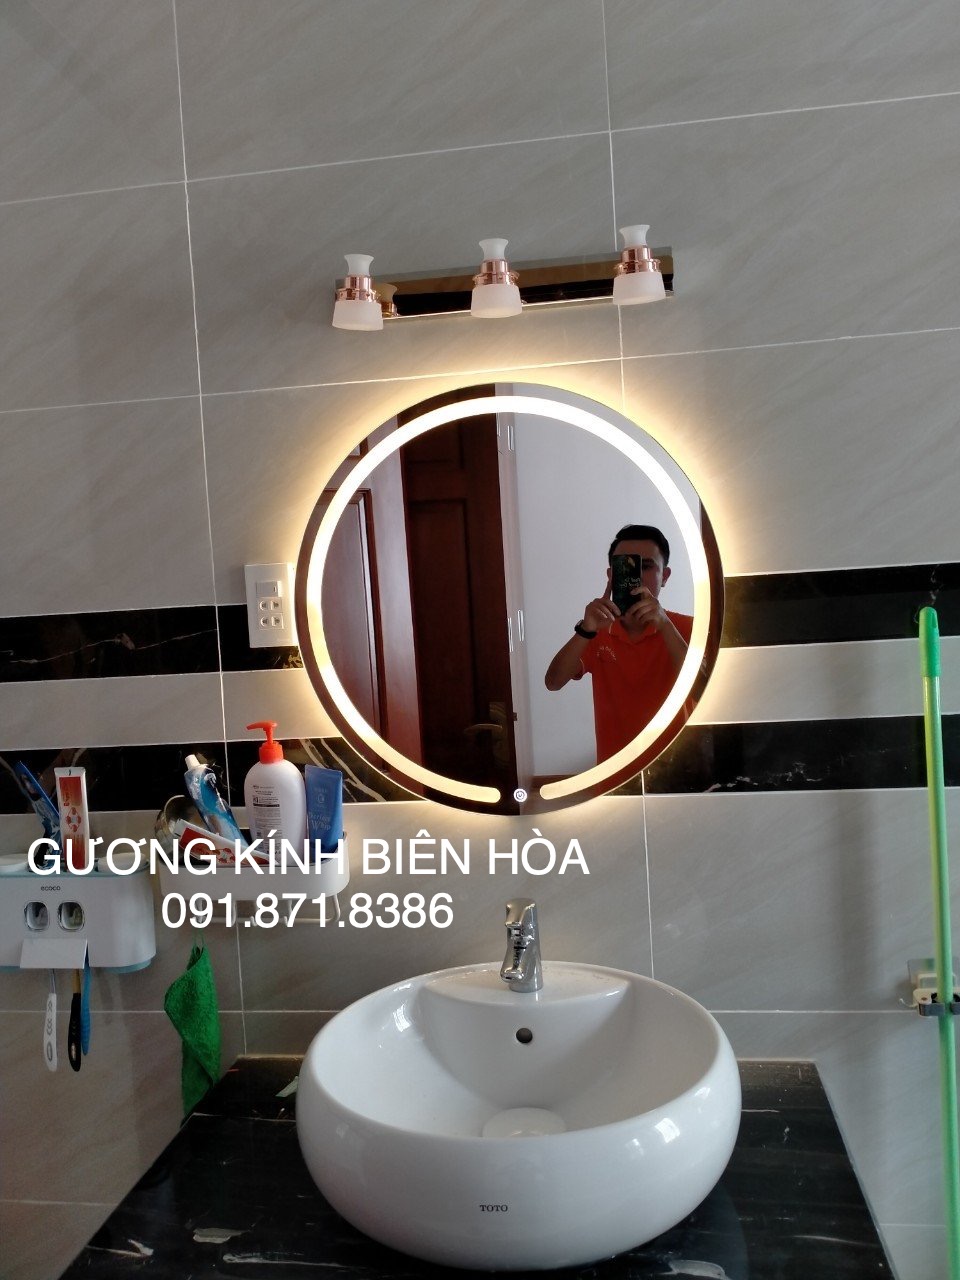 Gương đèn led cảm ứng treo tường nhà vệ sinh Biên Hòa Đồng Nai